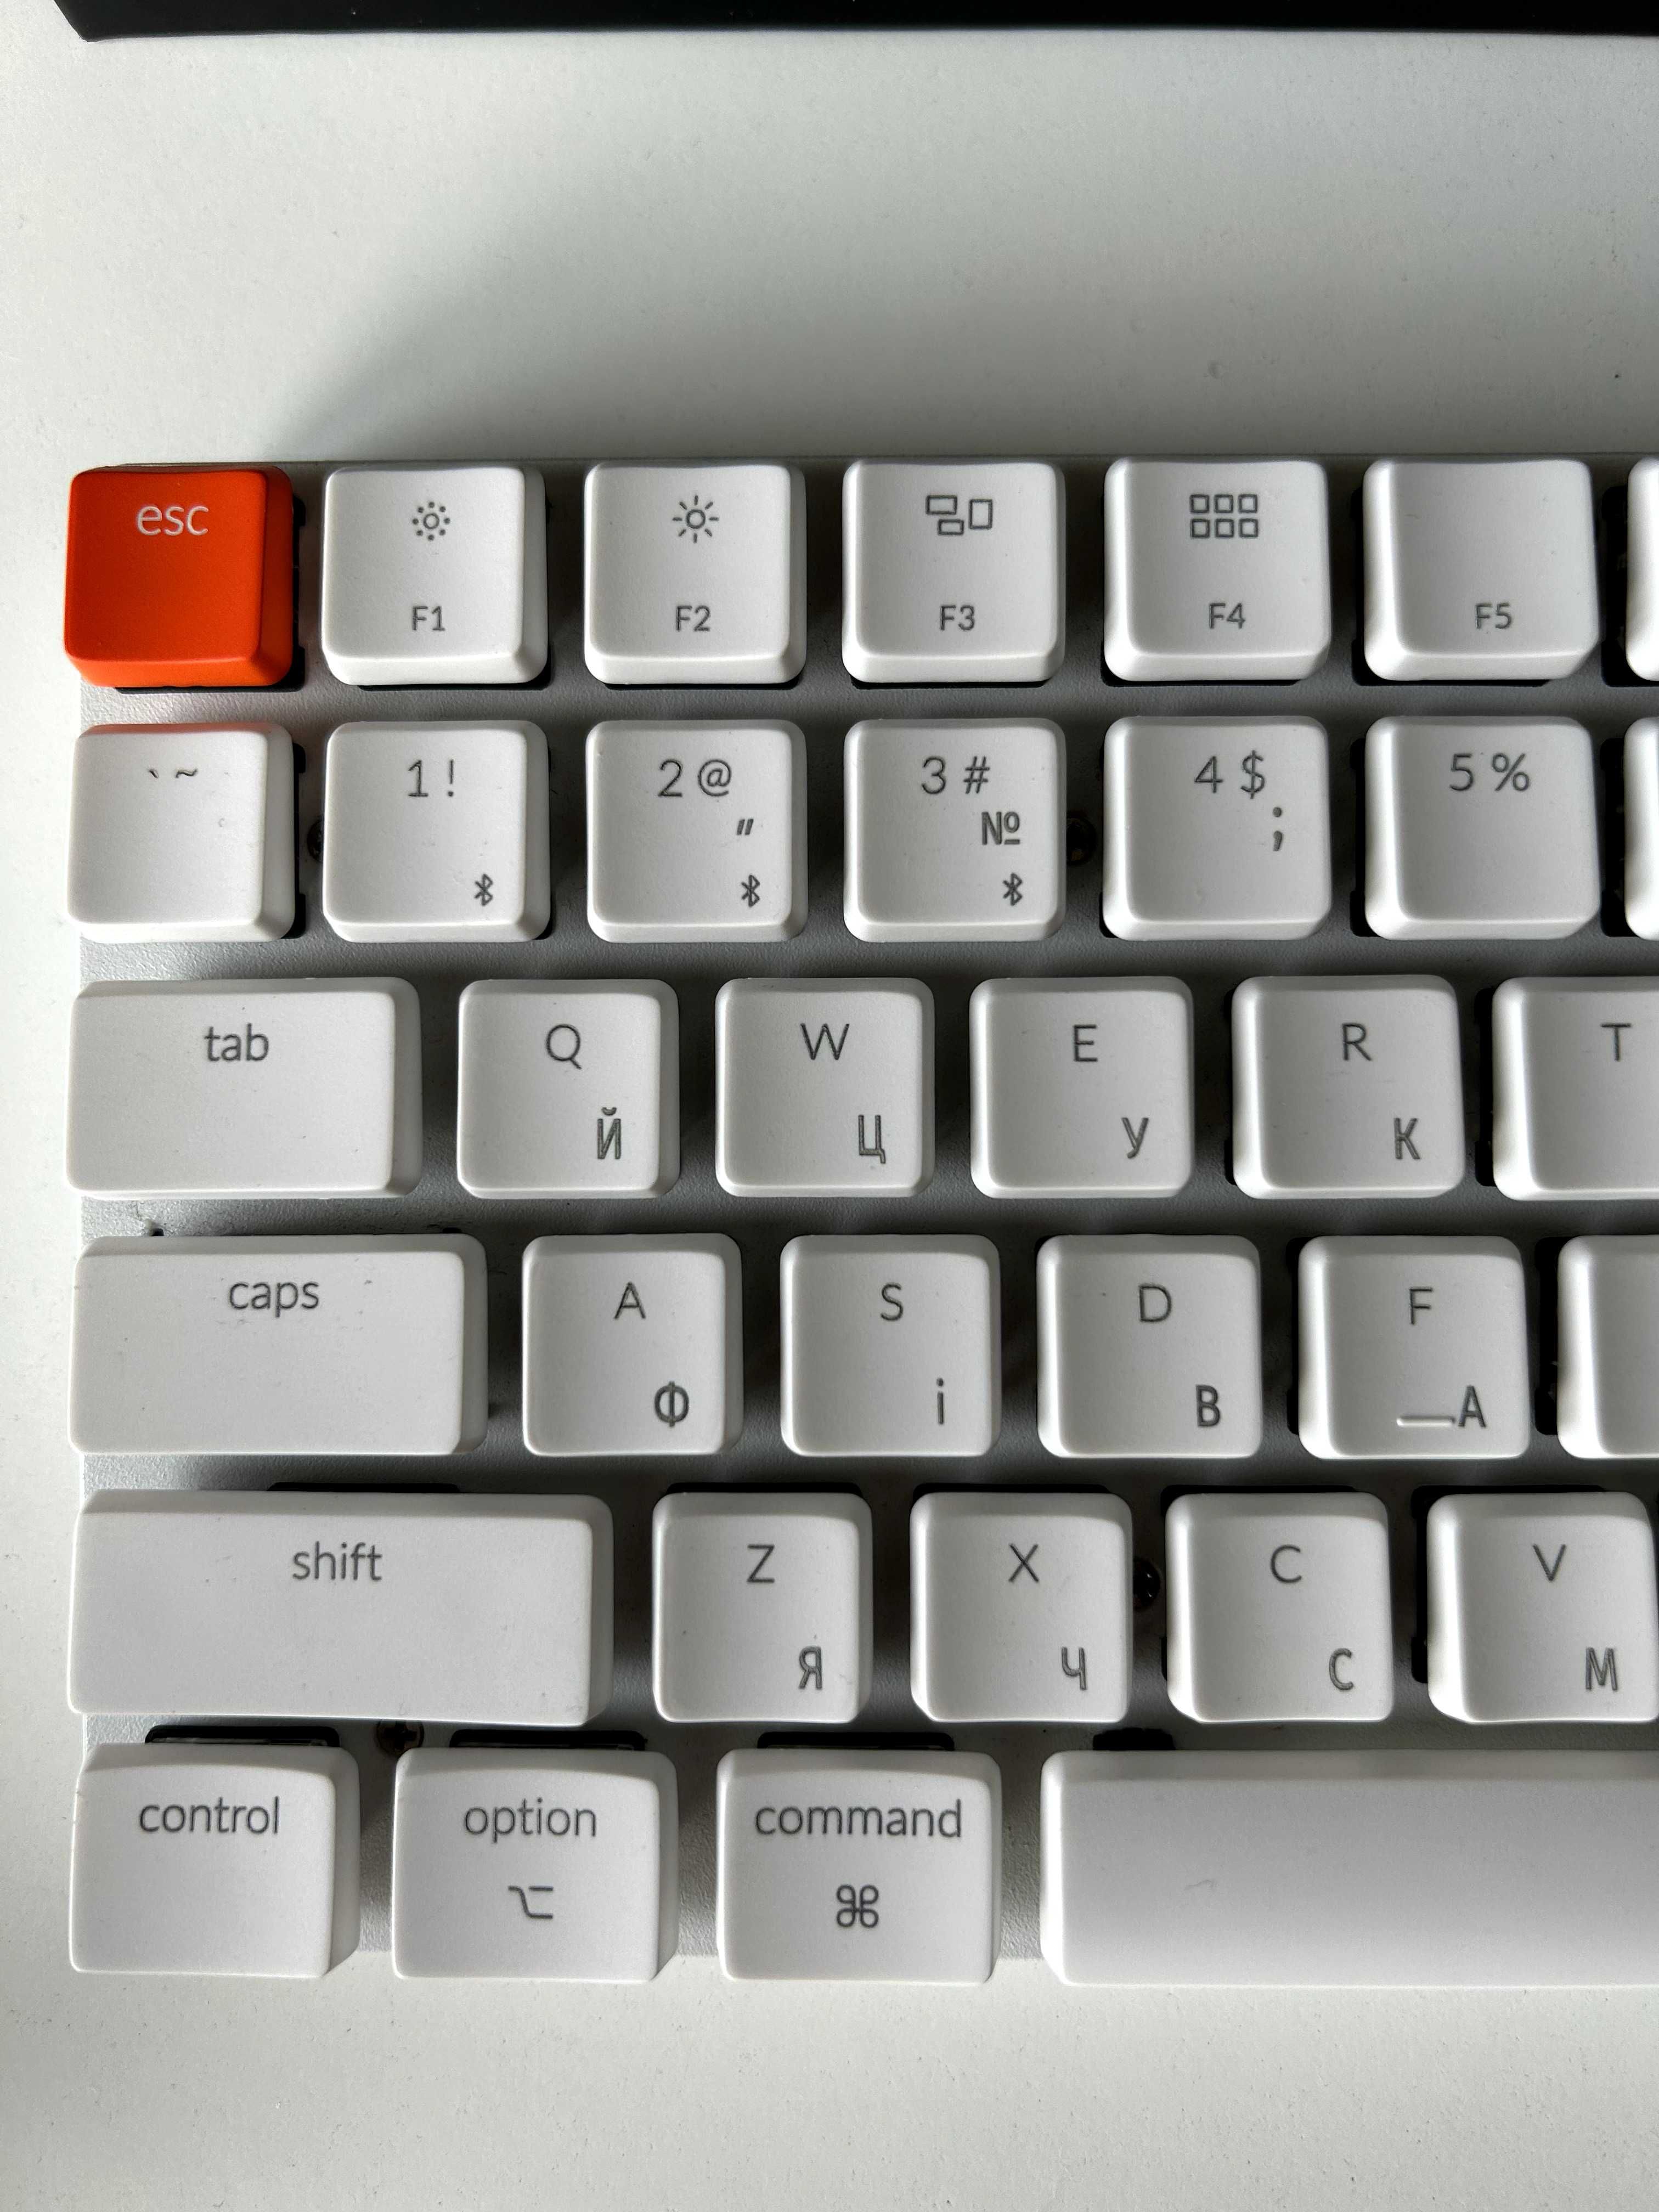 Безпровідна Клавіатура Keychron K3 White з гравіюванням